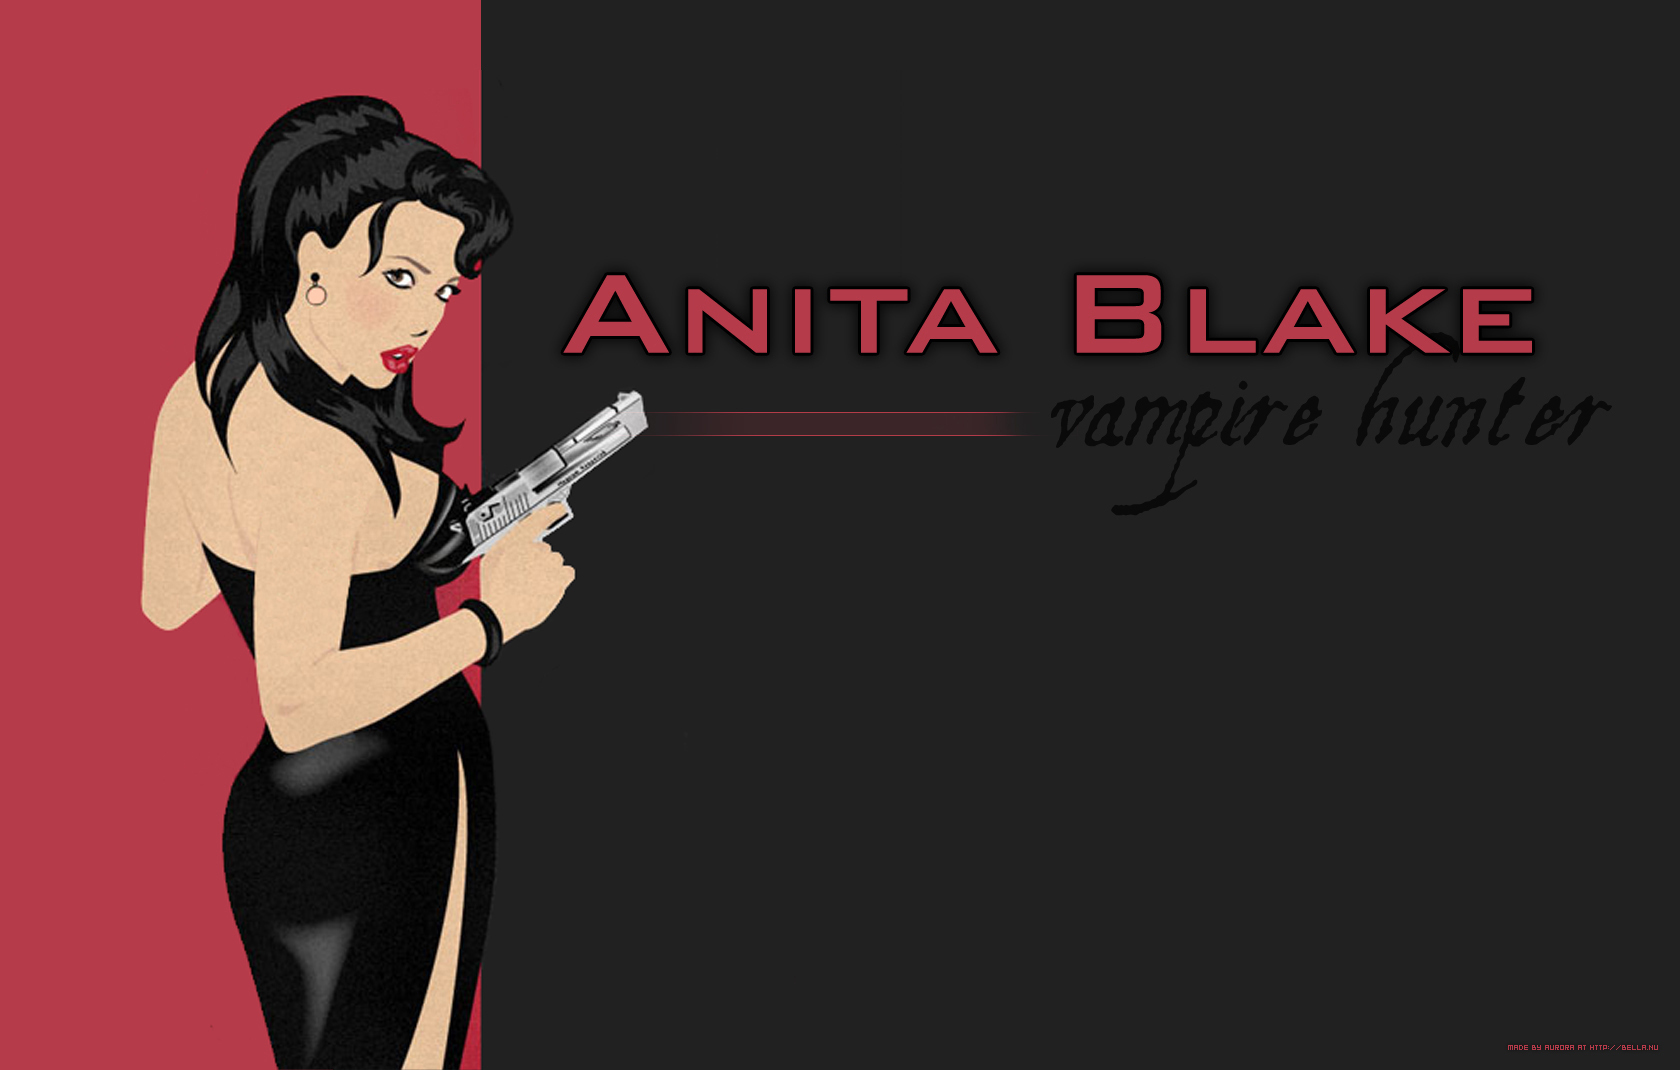 Anita Blake: Vampire Hunter - Wikipedia